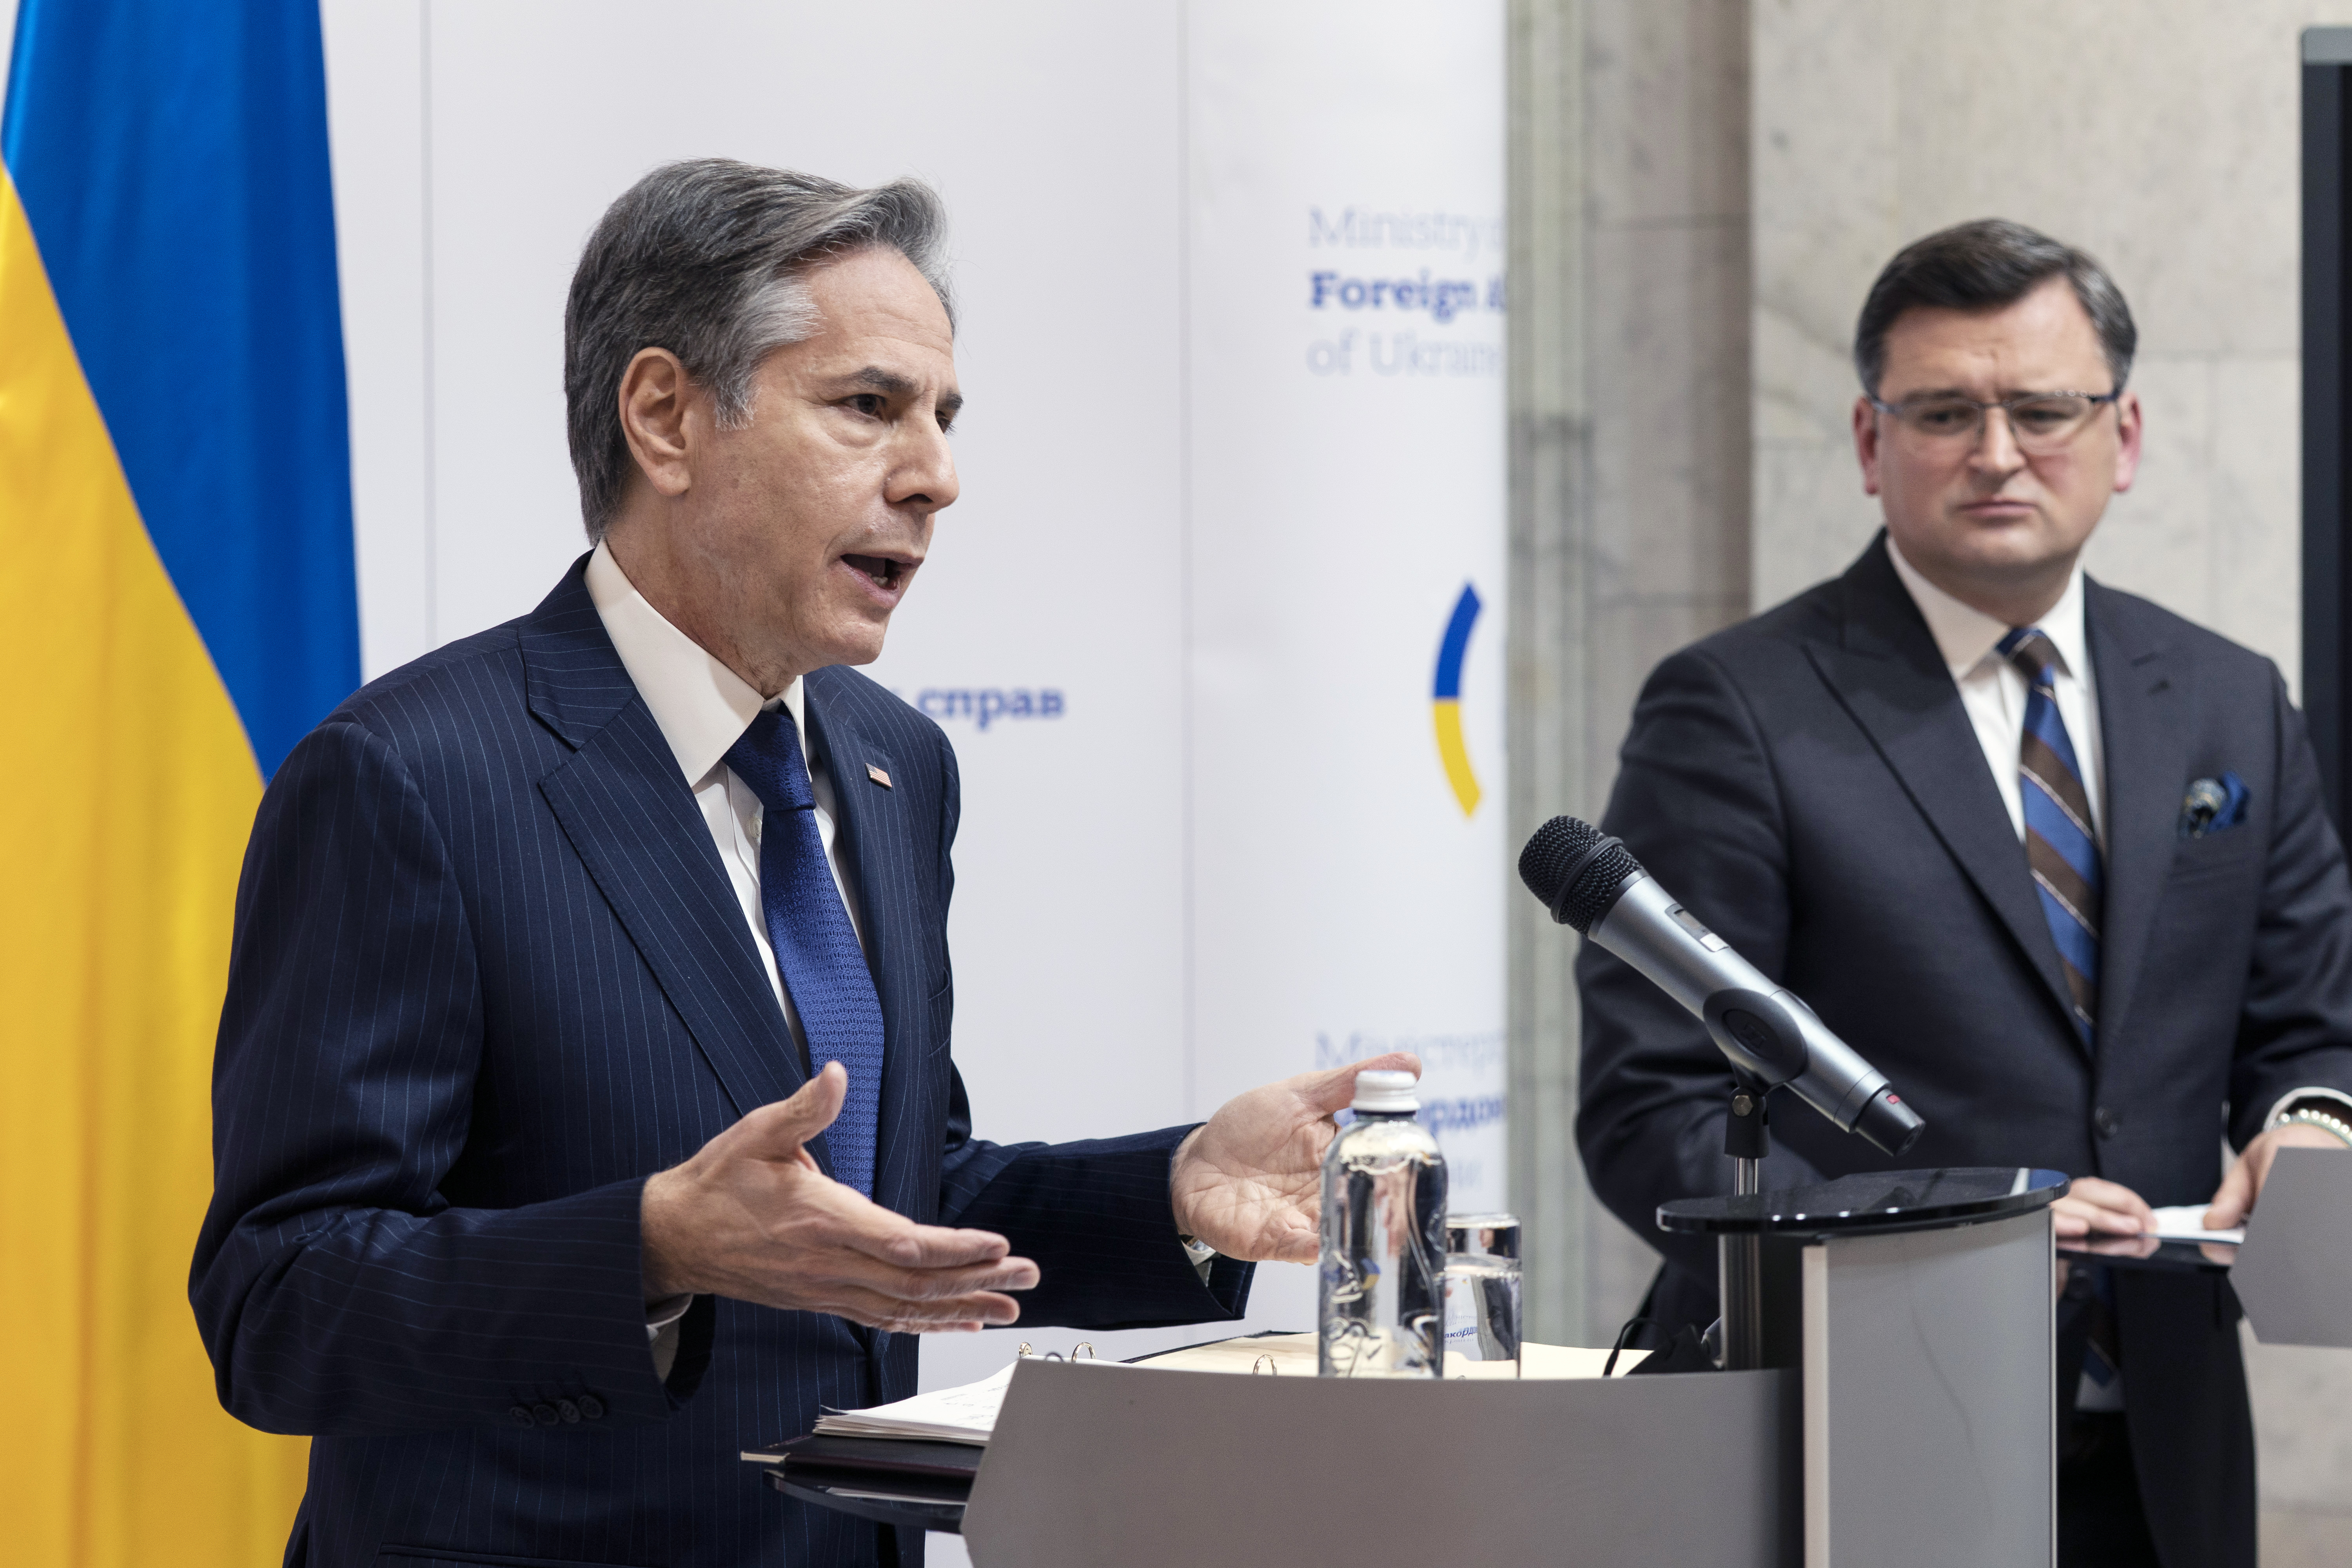 O secretário de Estado Antony Blinken, à esquerda, fala durante uma disponibilidade de mídia com o ministro das Relações Exteriores da Ucrânia, Dmytro Kuleba, no Ministério das Relações Exteriores,